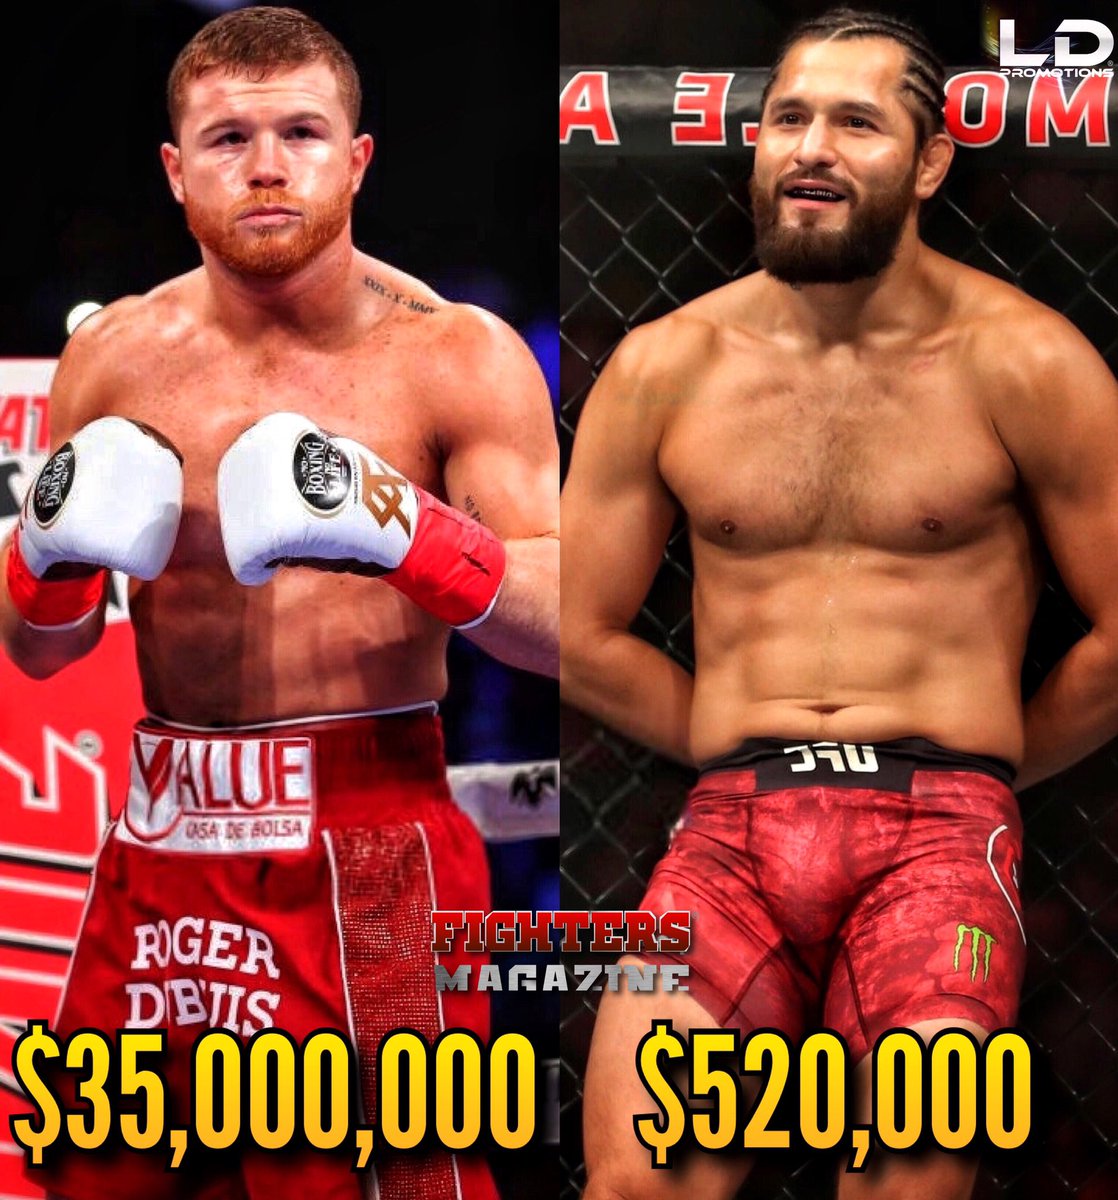 😔🔥 La triste realidad. La diferencia abismal en sueldos del Boxeo y el MMA (Jorge Masvidal y Nate Diaz ganaron la misma cantidad). #CaneloKovalev #UFC #UFC244